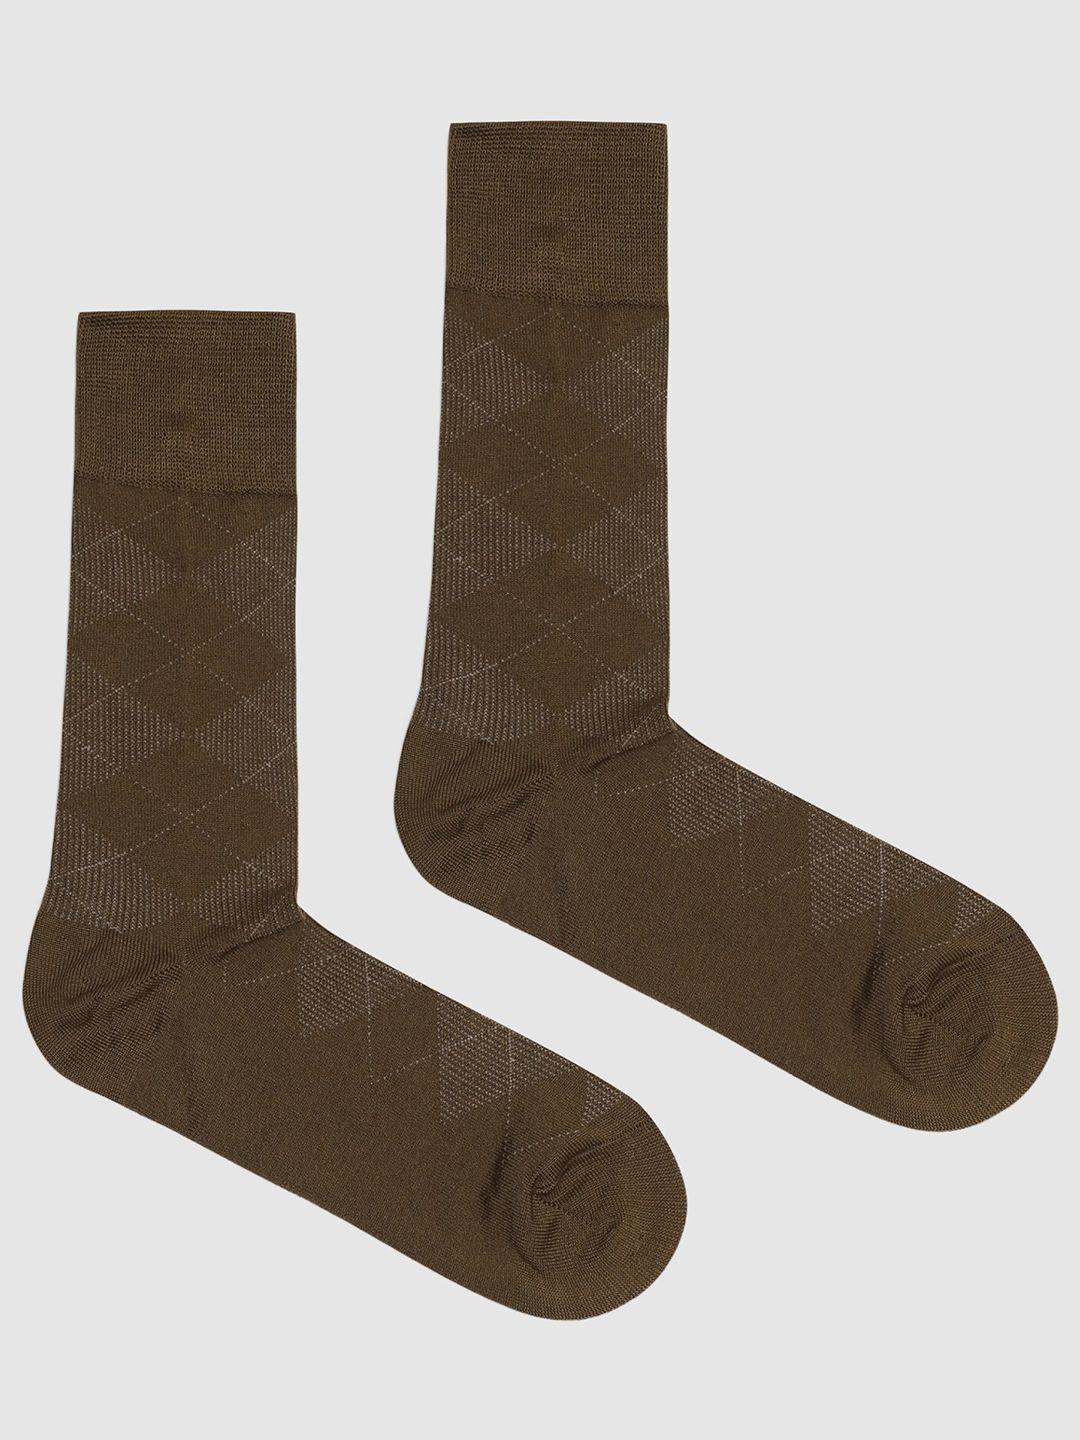 blackberrys-men-patterned-cotton-calf-length-socks